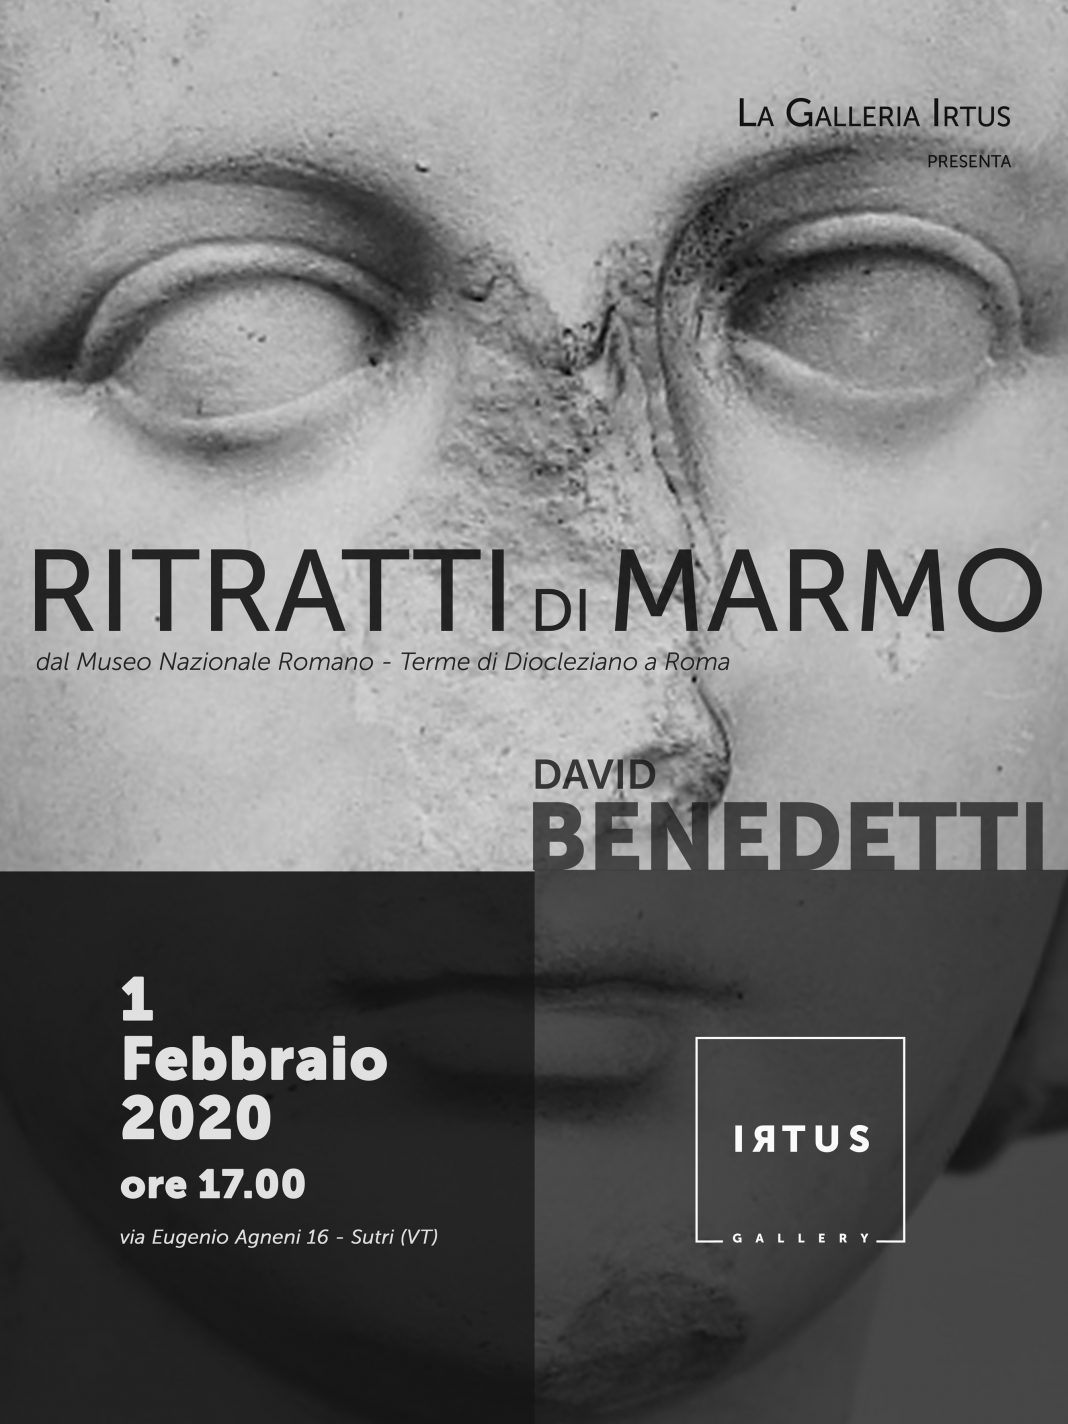 David Benedetti – Ritratti di Marmohttps://www.exibart.com/repository/media/formidable/11/RITRATTI-DI-MARMO-locandina-web-1068x1424.jpg